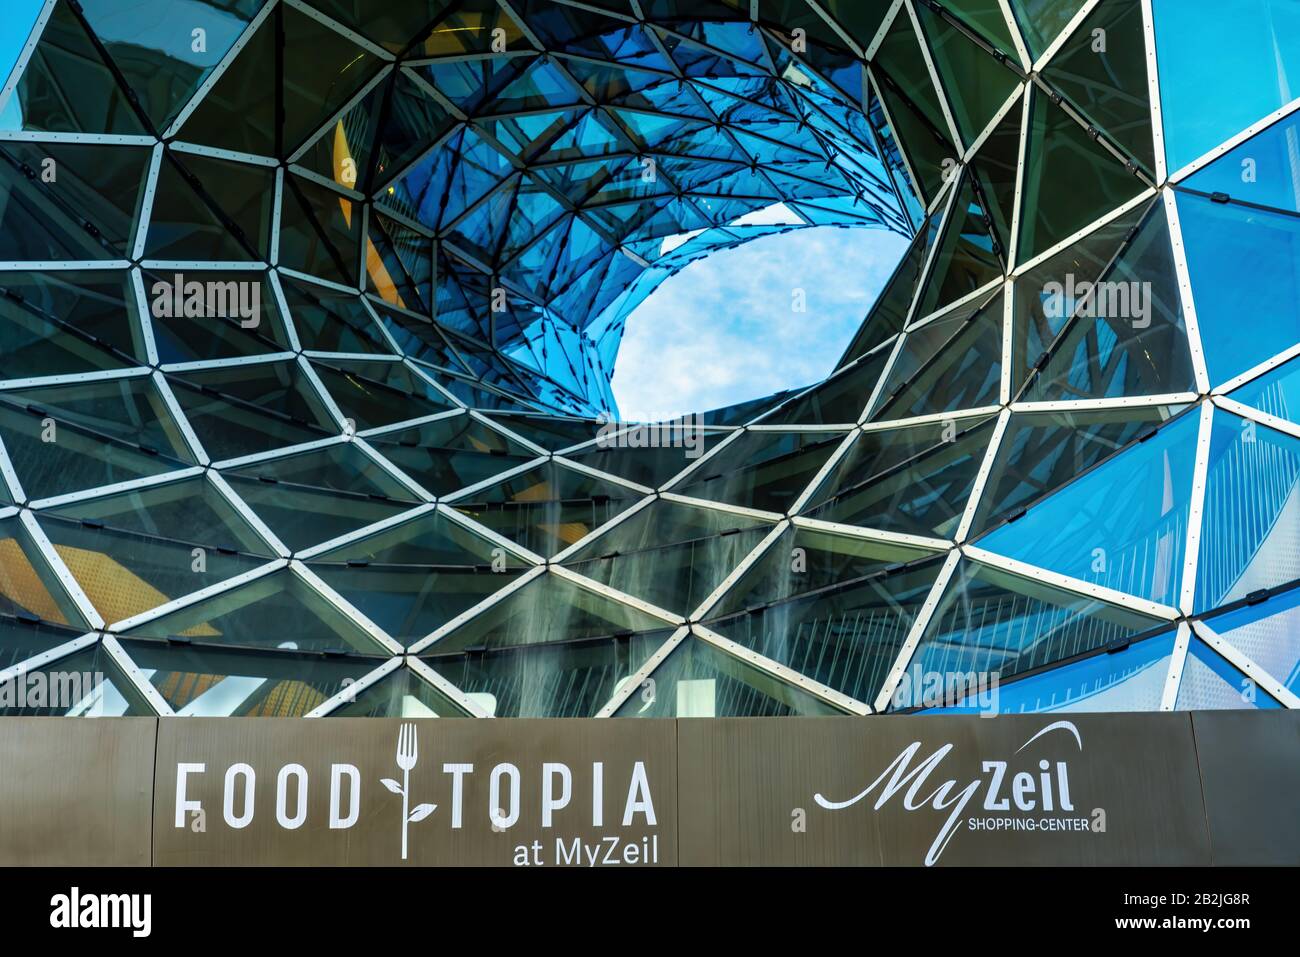 Frankfurt, 01.03.2020: MyZeil, ein modernes Einkaufszentrum im Zentrum Frankfurts, Entworfen vom italienischen Architekten Massimiliano Fuksas Stockfoto